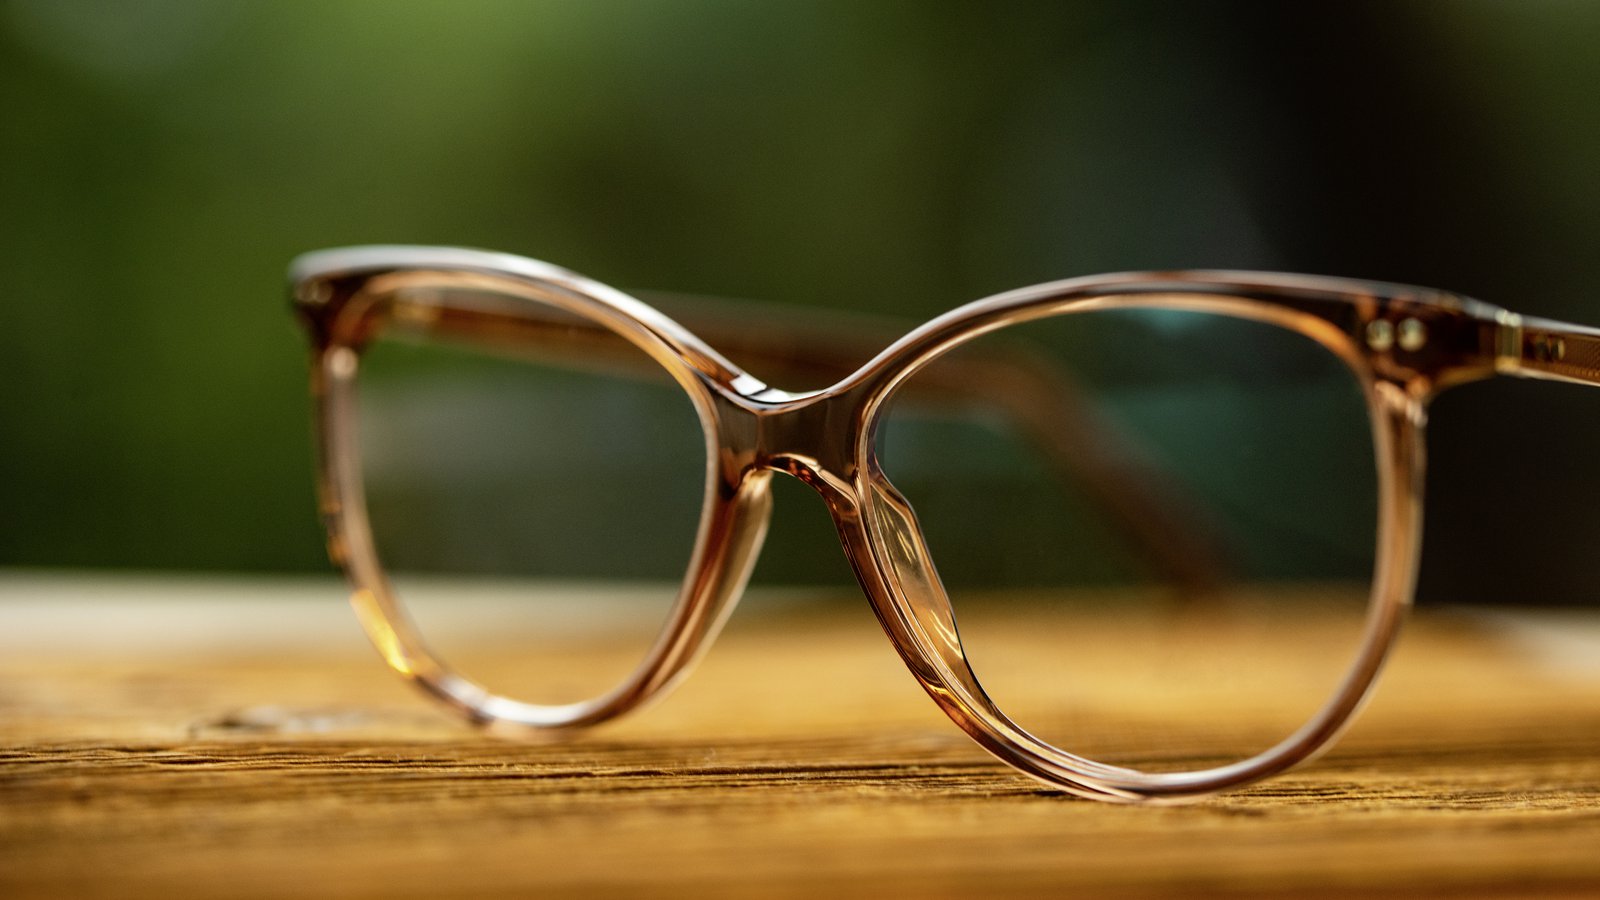 Brillen van LUNOR uit het artikel De Beste Onafhankelijke Brillenmerken gepubliceerd door FAVR the premium eyewear finder.